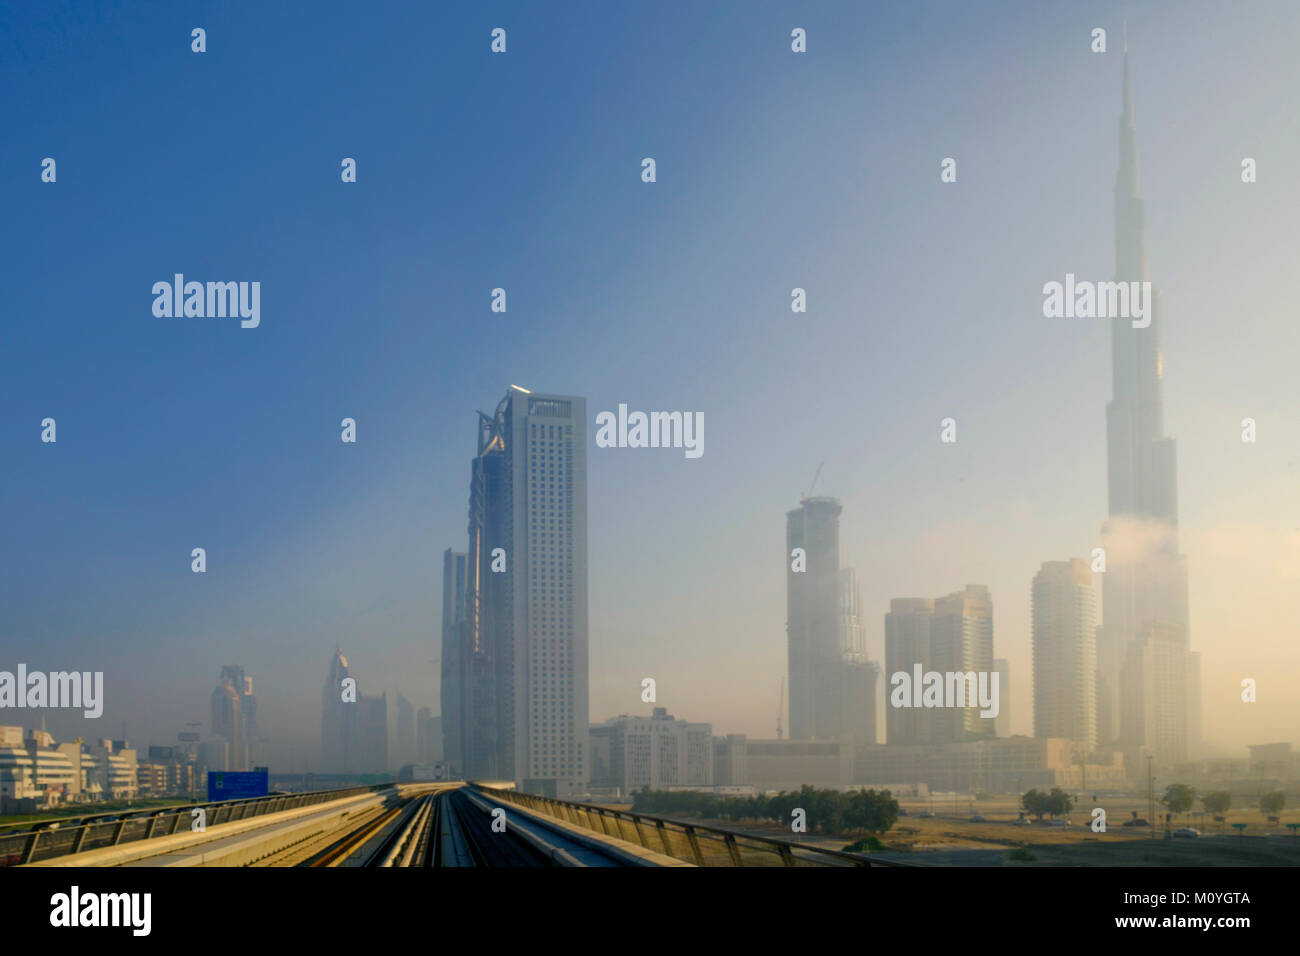 Skyline von Zentral-Dubai mit dem Burj Khalifa - dem höchsten Gebäude der Welt, Dubai Metro und U-Bahn-Linie, Dubai, Vereinigte Arabische Emirate Stockfoto